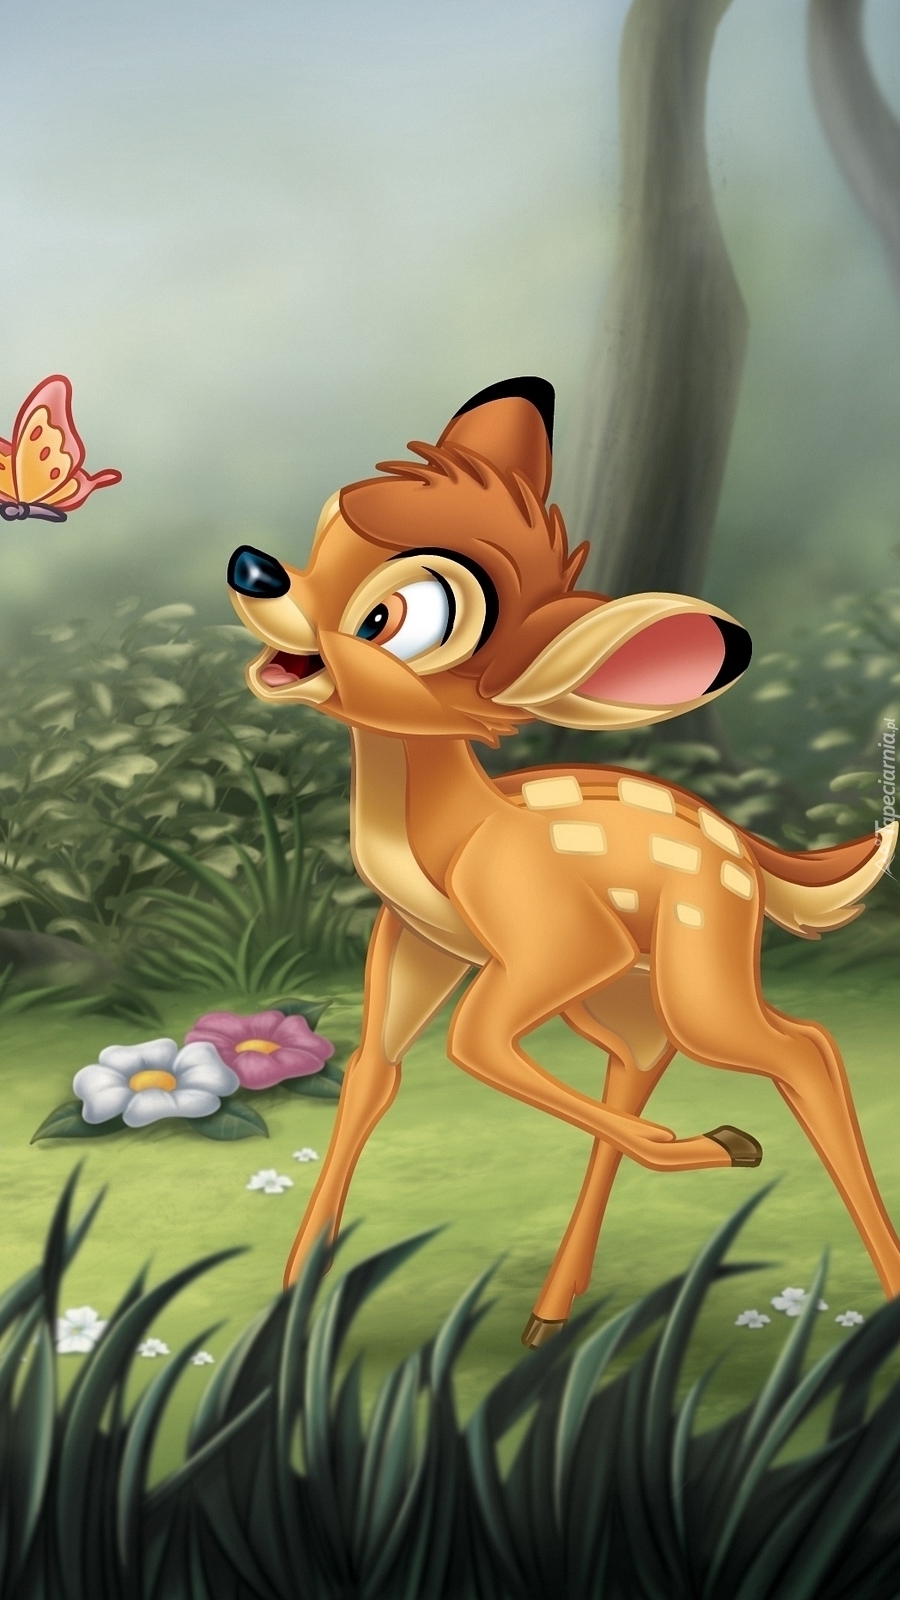 Bambi  z motylkiem